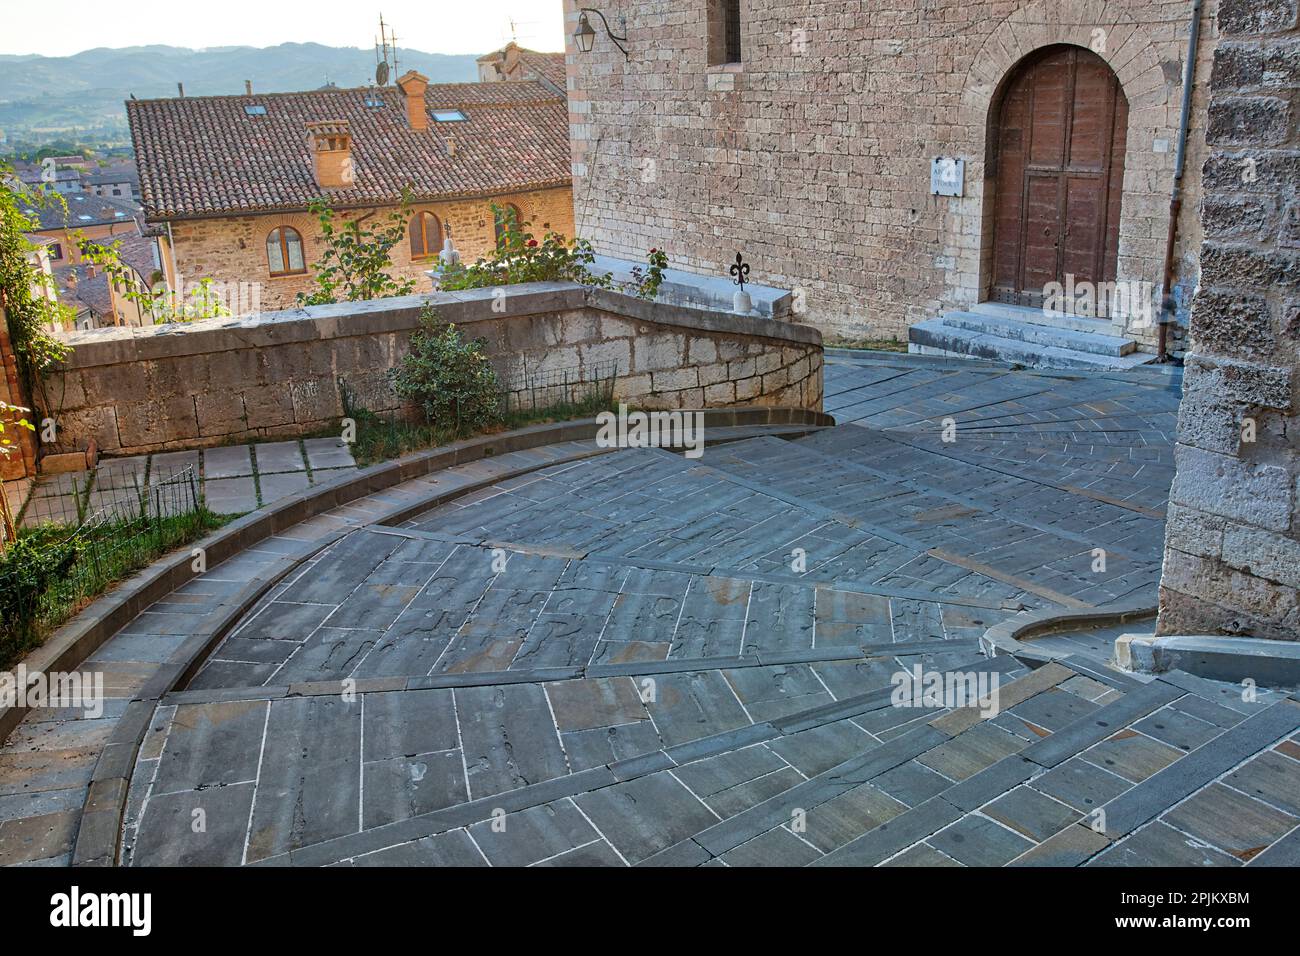 Italien, Umbrien. Eine breite, gebogene Treppe führt durch die mittelalterliche Stadt Gubbio. Stockfoto